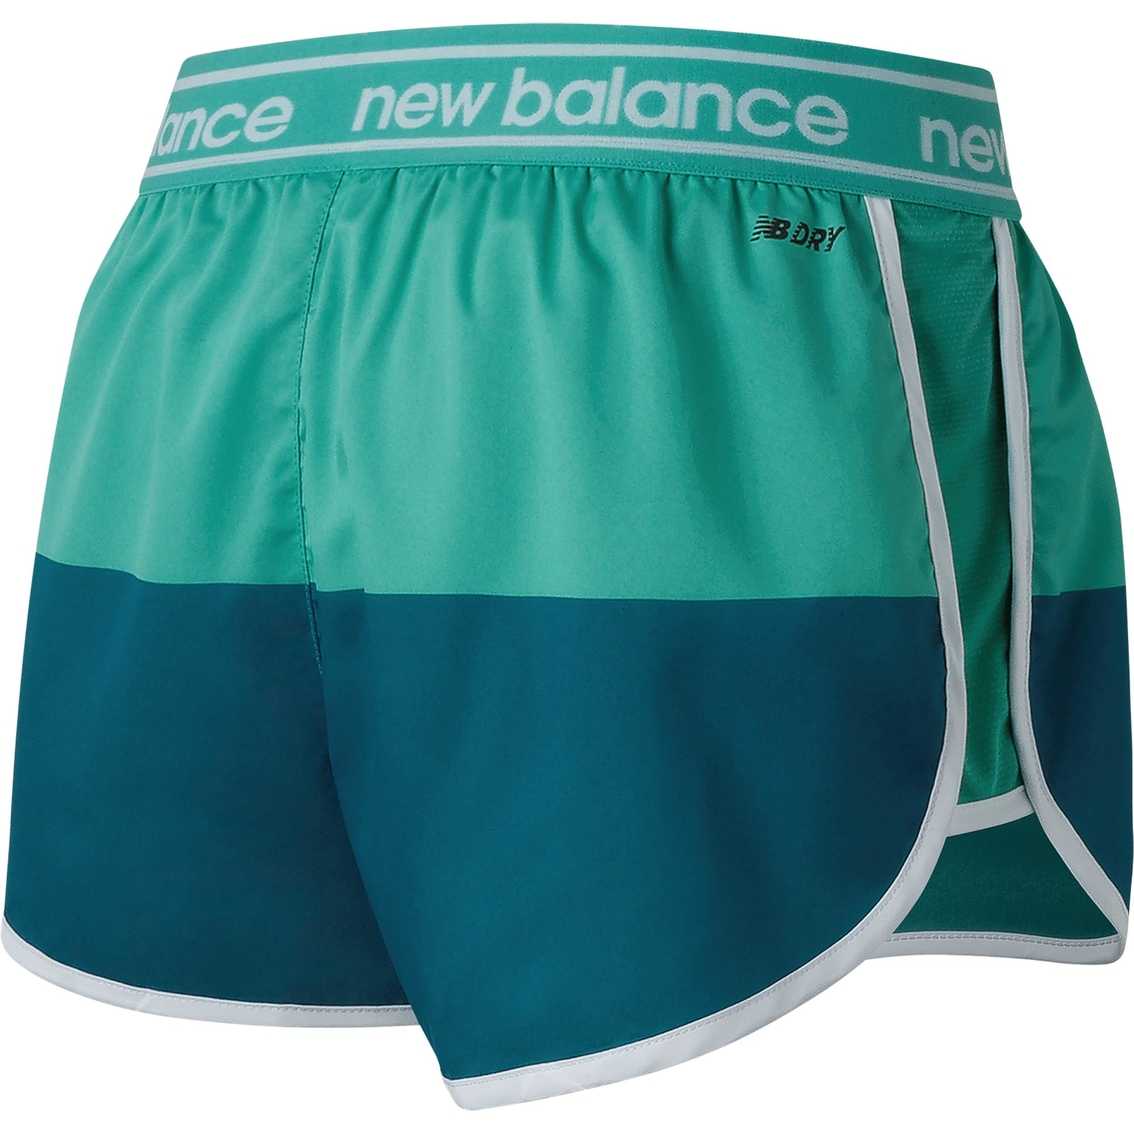 New Balance Accelerate Shorts - Image 2 of 2